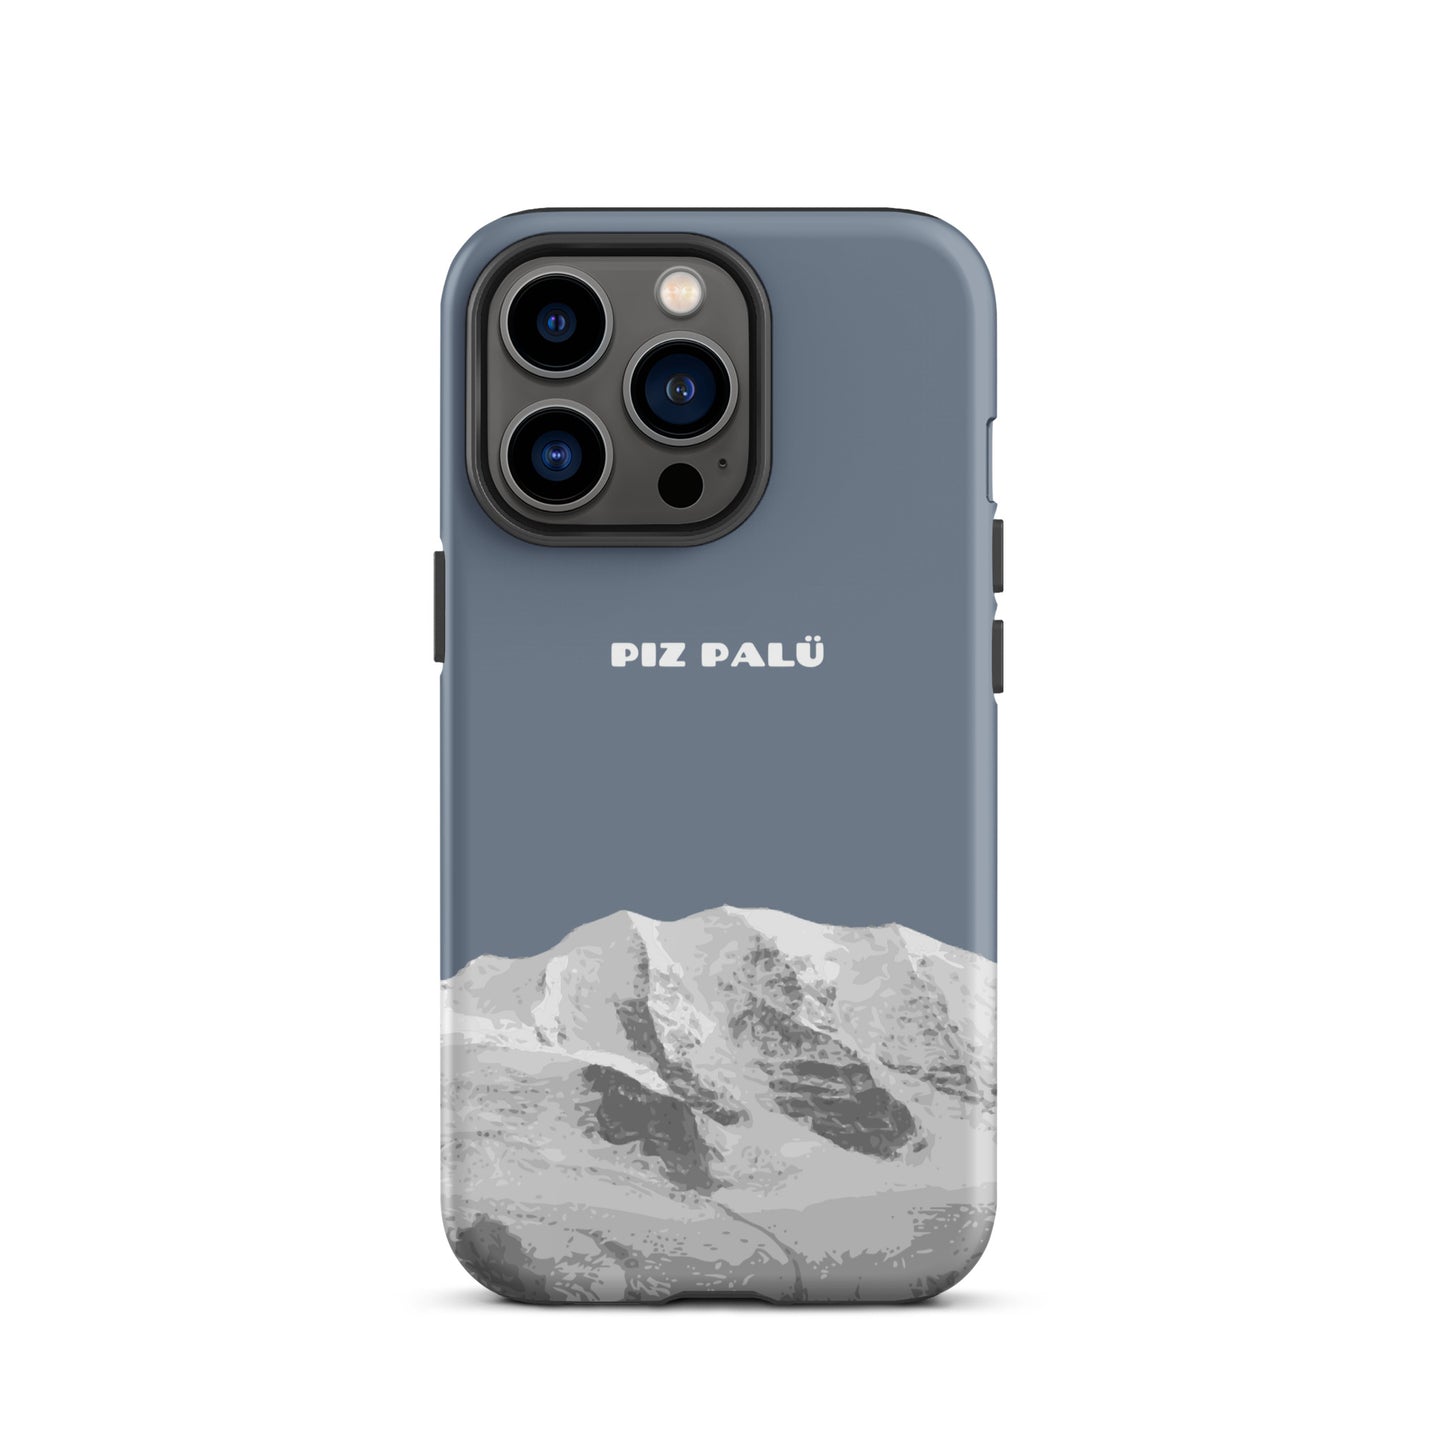 Hülle für das iPhone 13 Pro von Apple in der Farbe Schiefergrau, dass den Piz Palü in Graubünden zeigt.